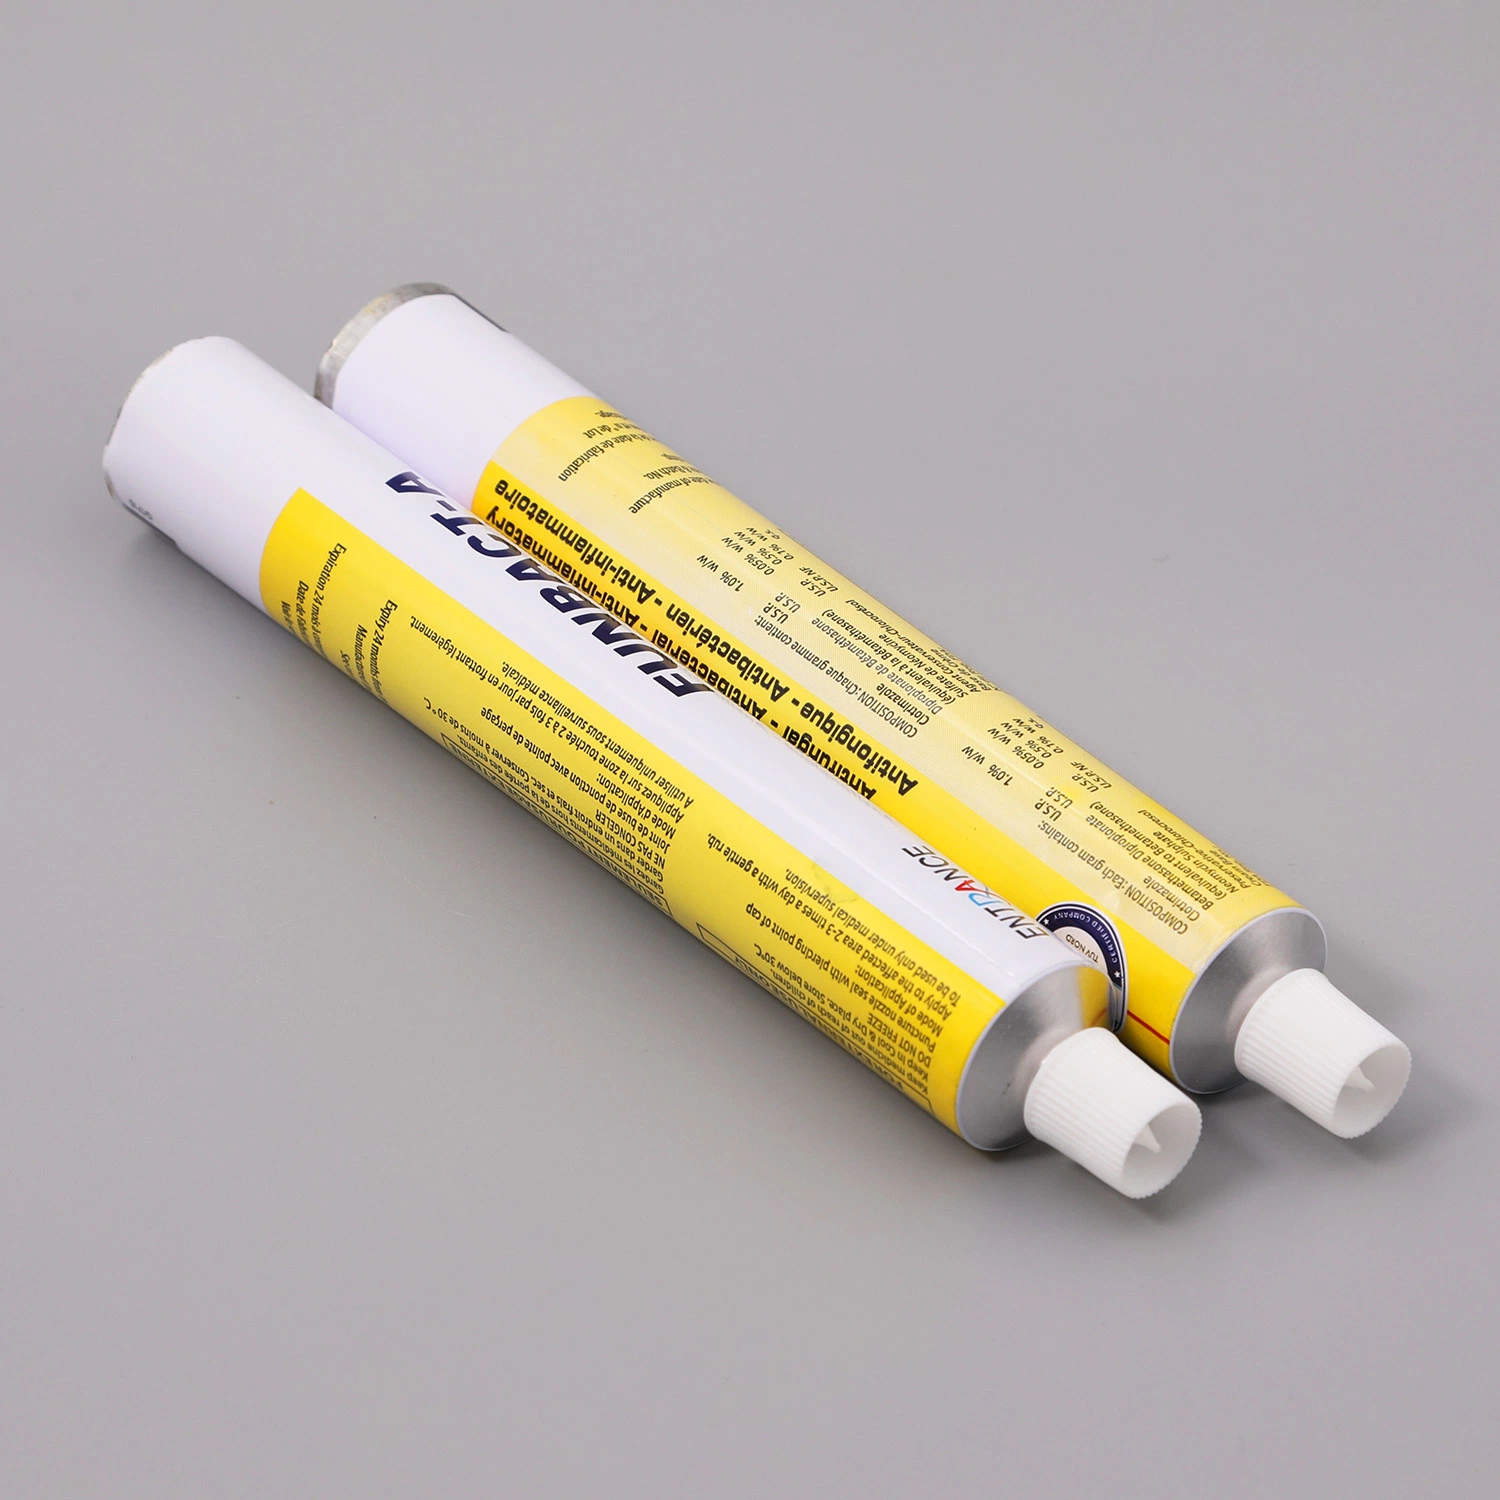 Medicina ungüento de Paquete de tubo de Productos Farmacéuticos Paquete de tubo plegable de aluminio para la infección de la piel/D28mm 135ml con tapón de rosca de plástico